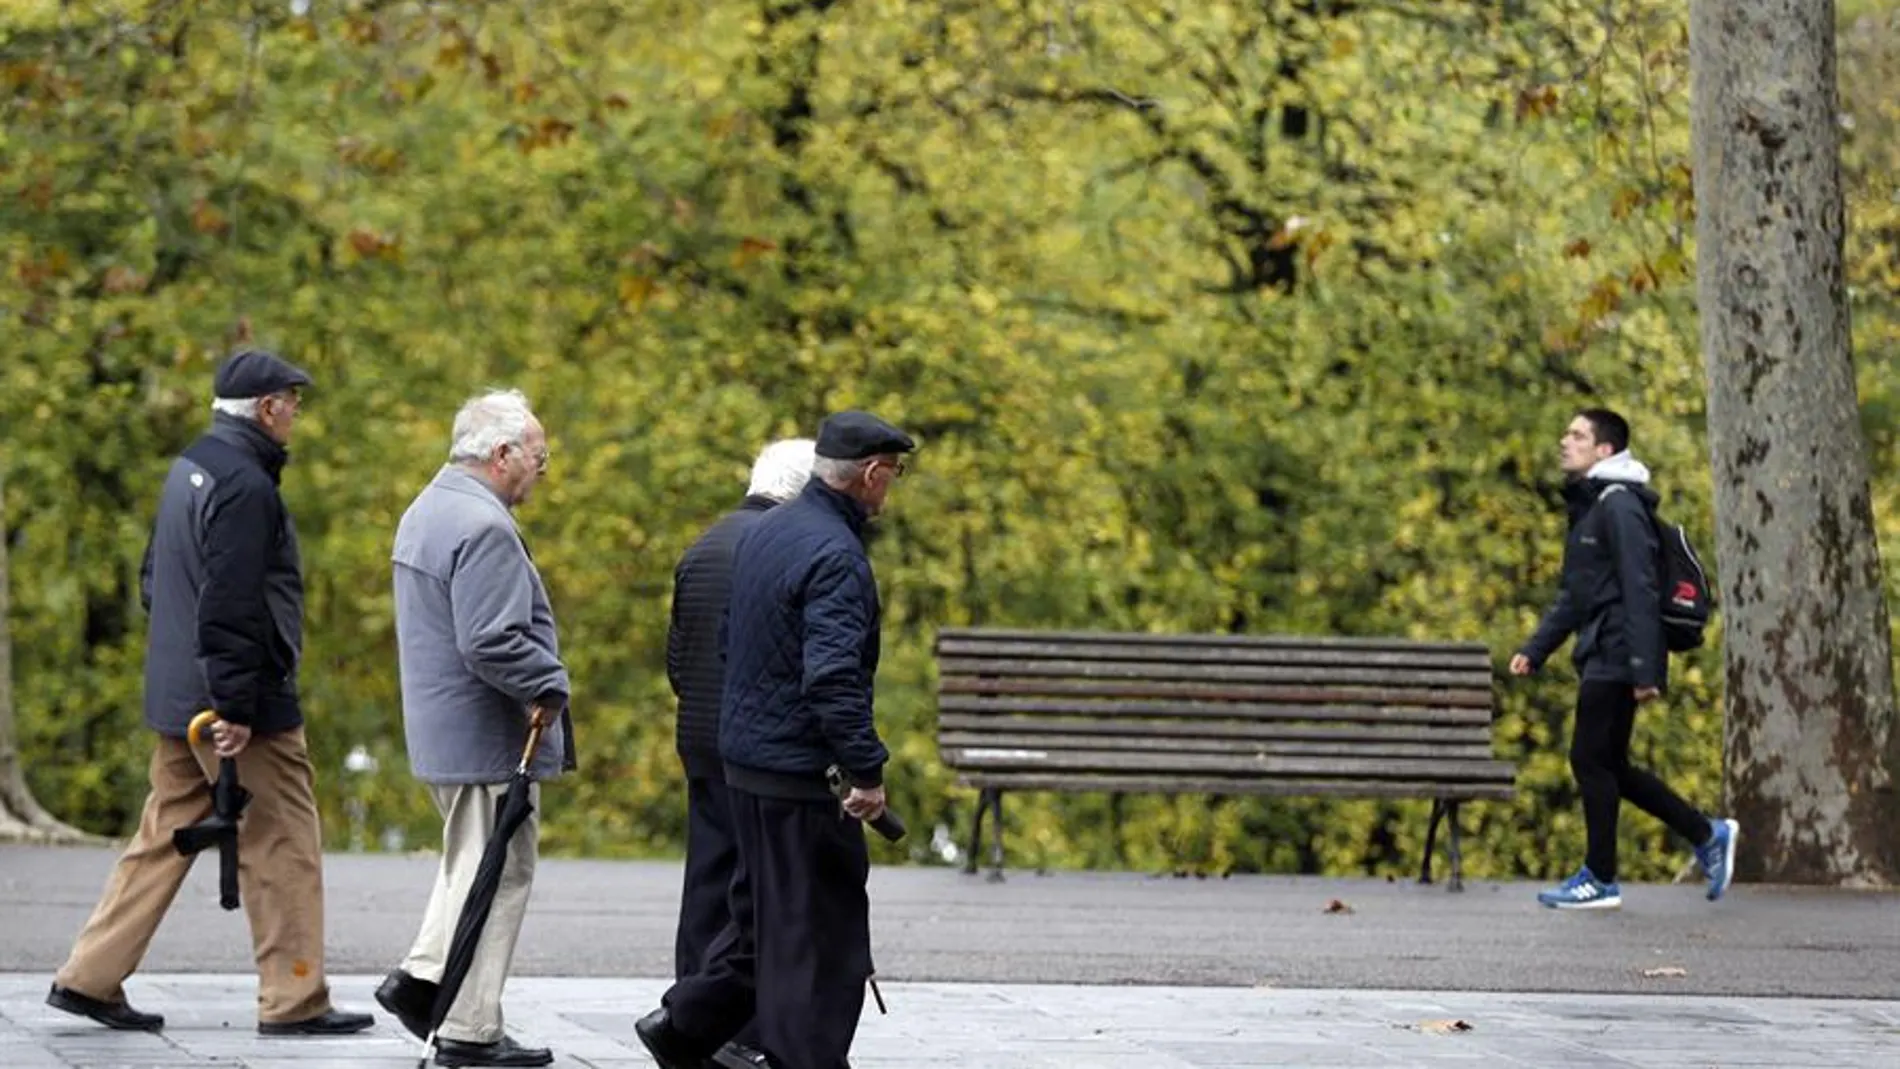 Jubilados y pensionistas pasean en un parque de Bilbao.